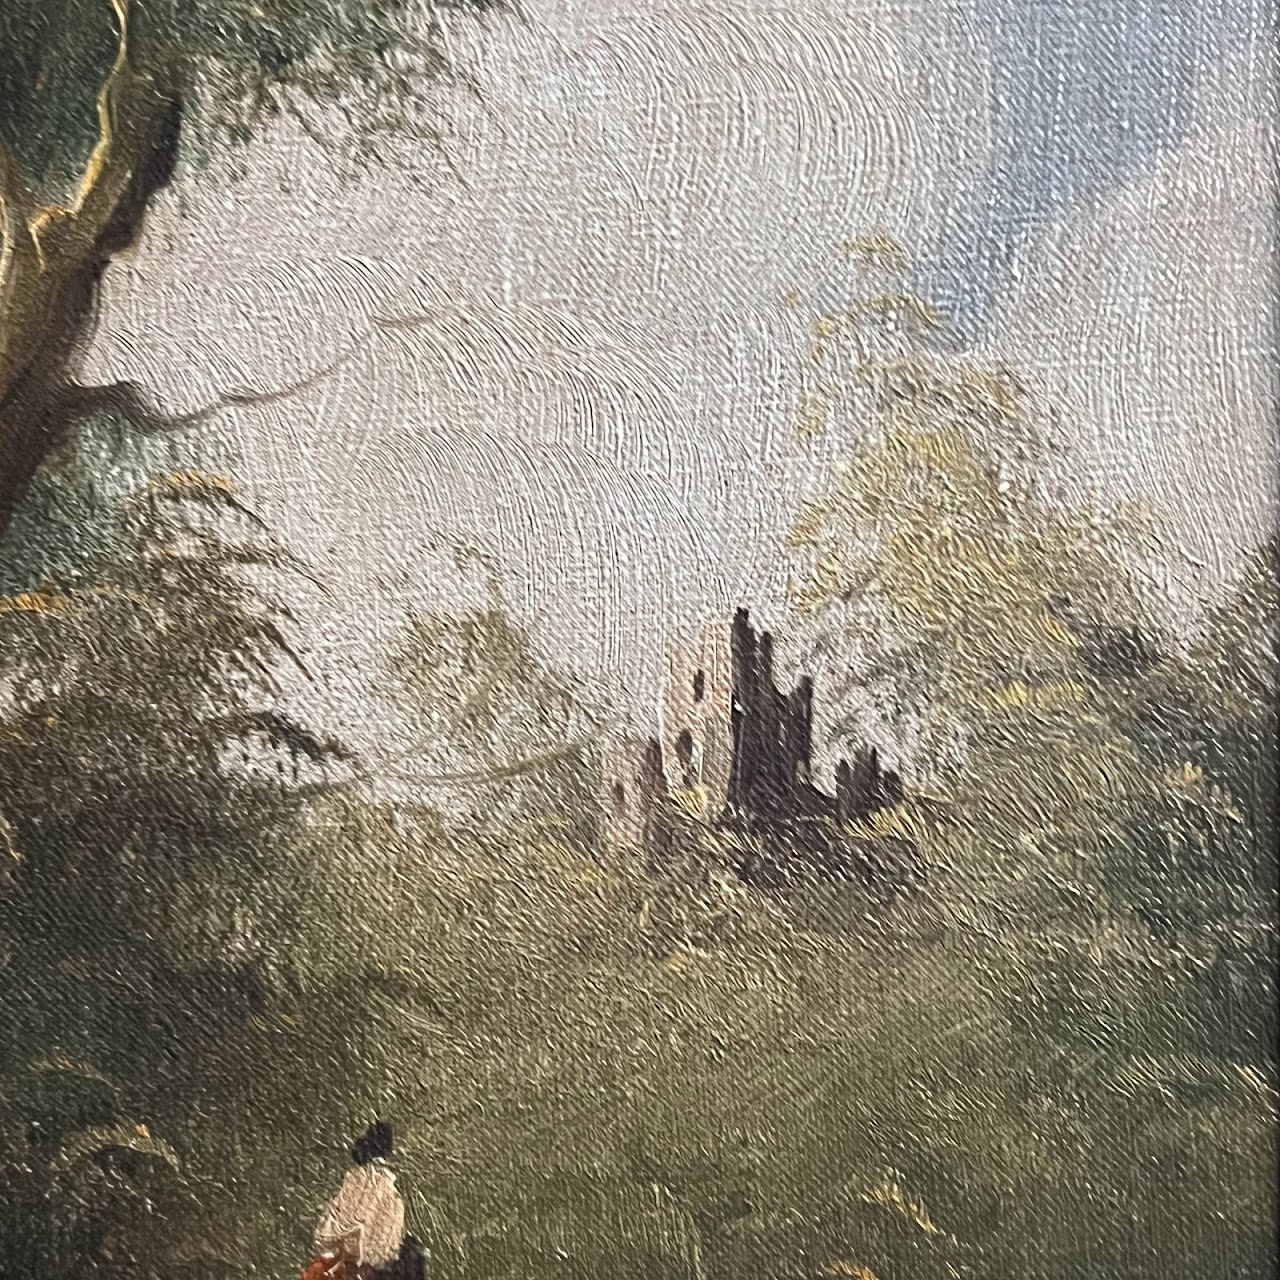 Landscape with Castle Oil Paiting